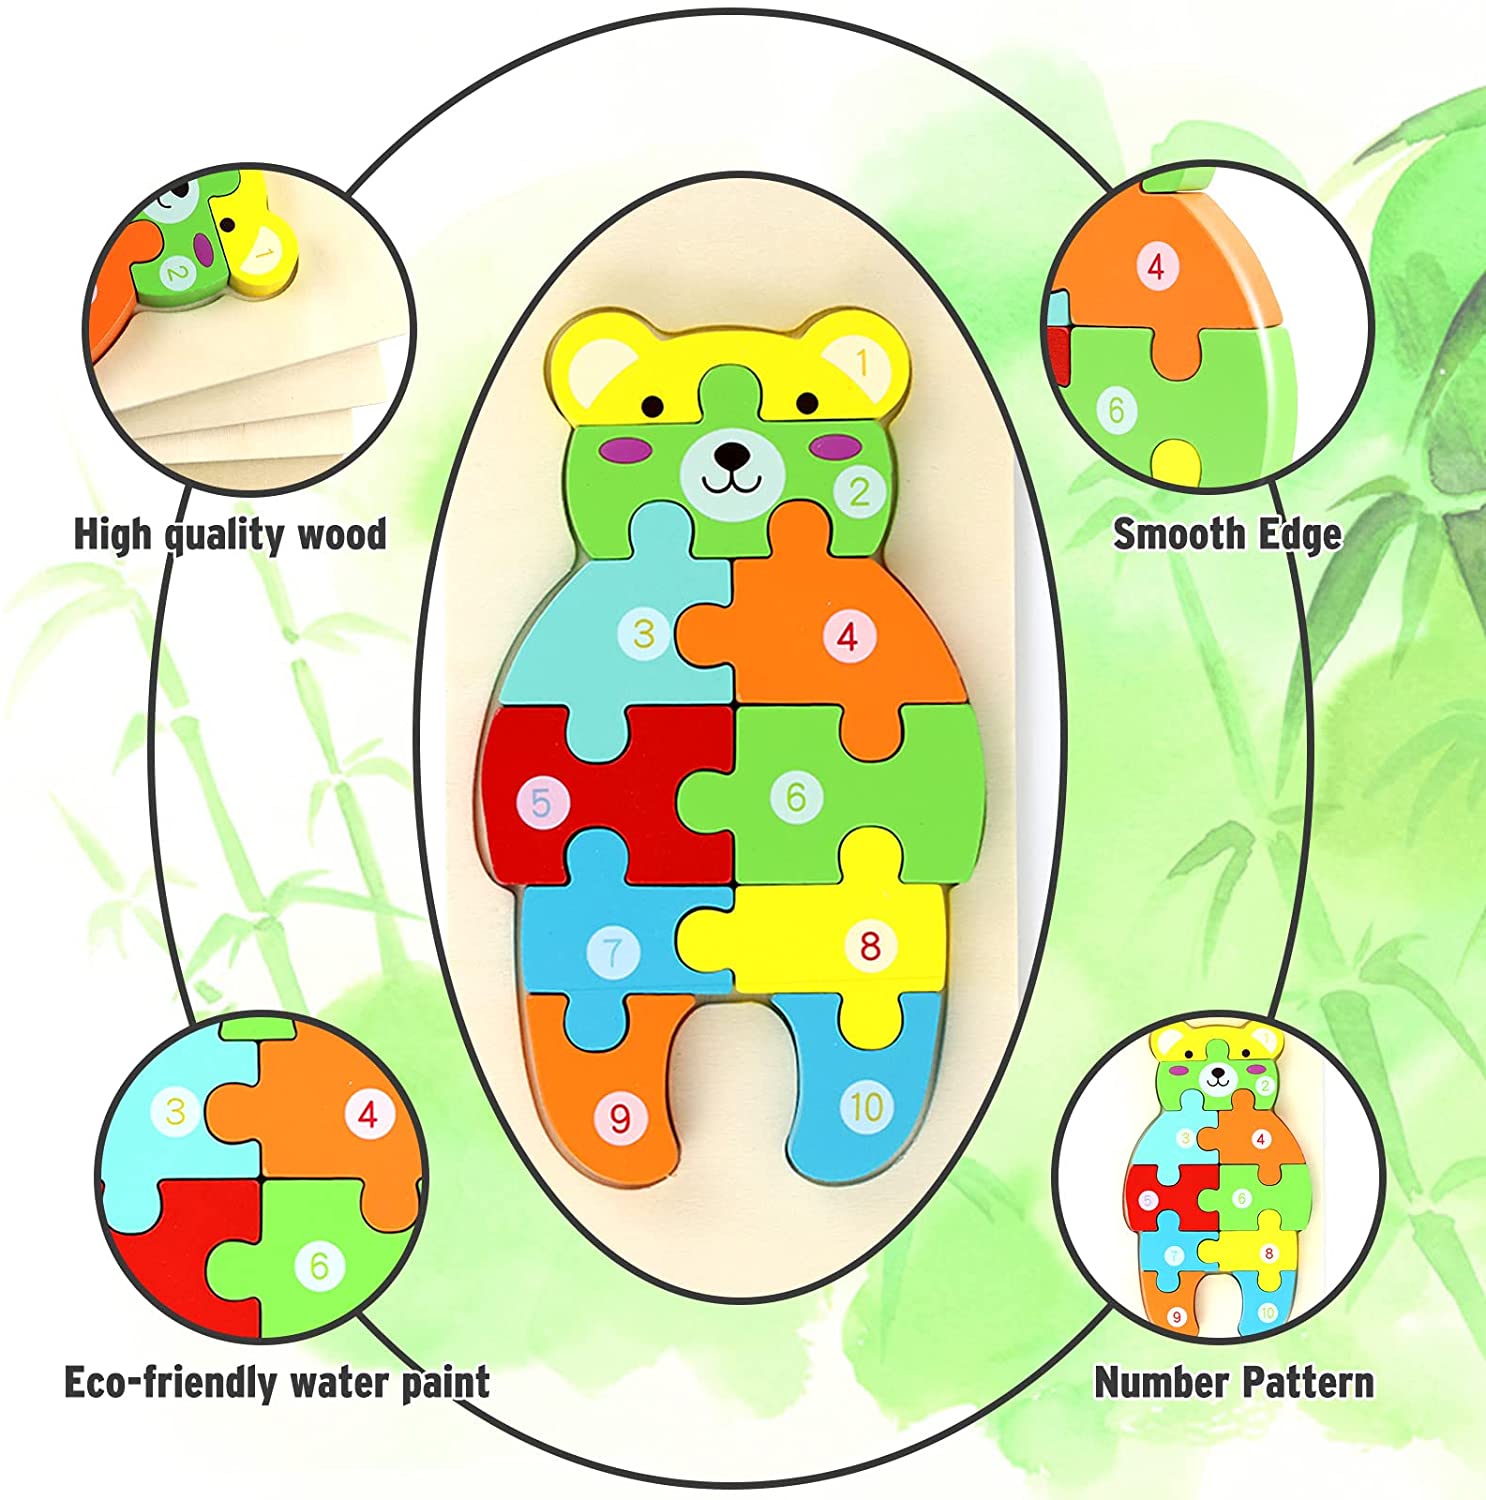 🎁Zabawki Drewniane Puzzle, Zabawki Edukacyjne Do Transportu Zwierząt